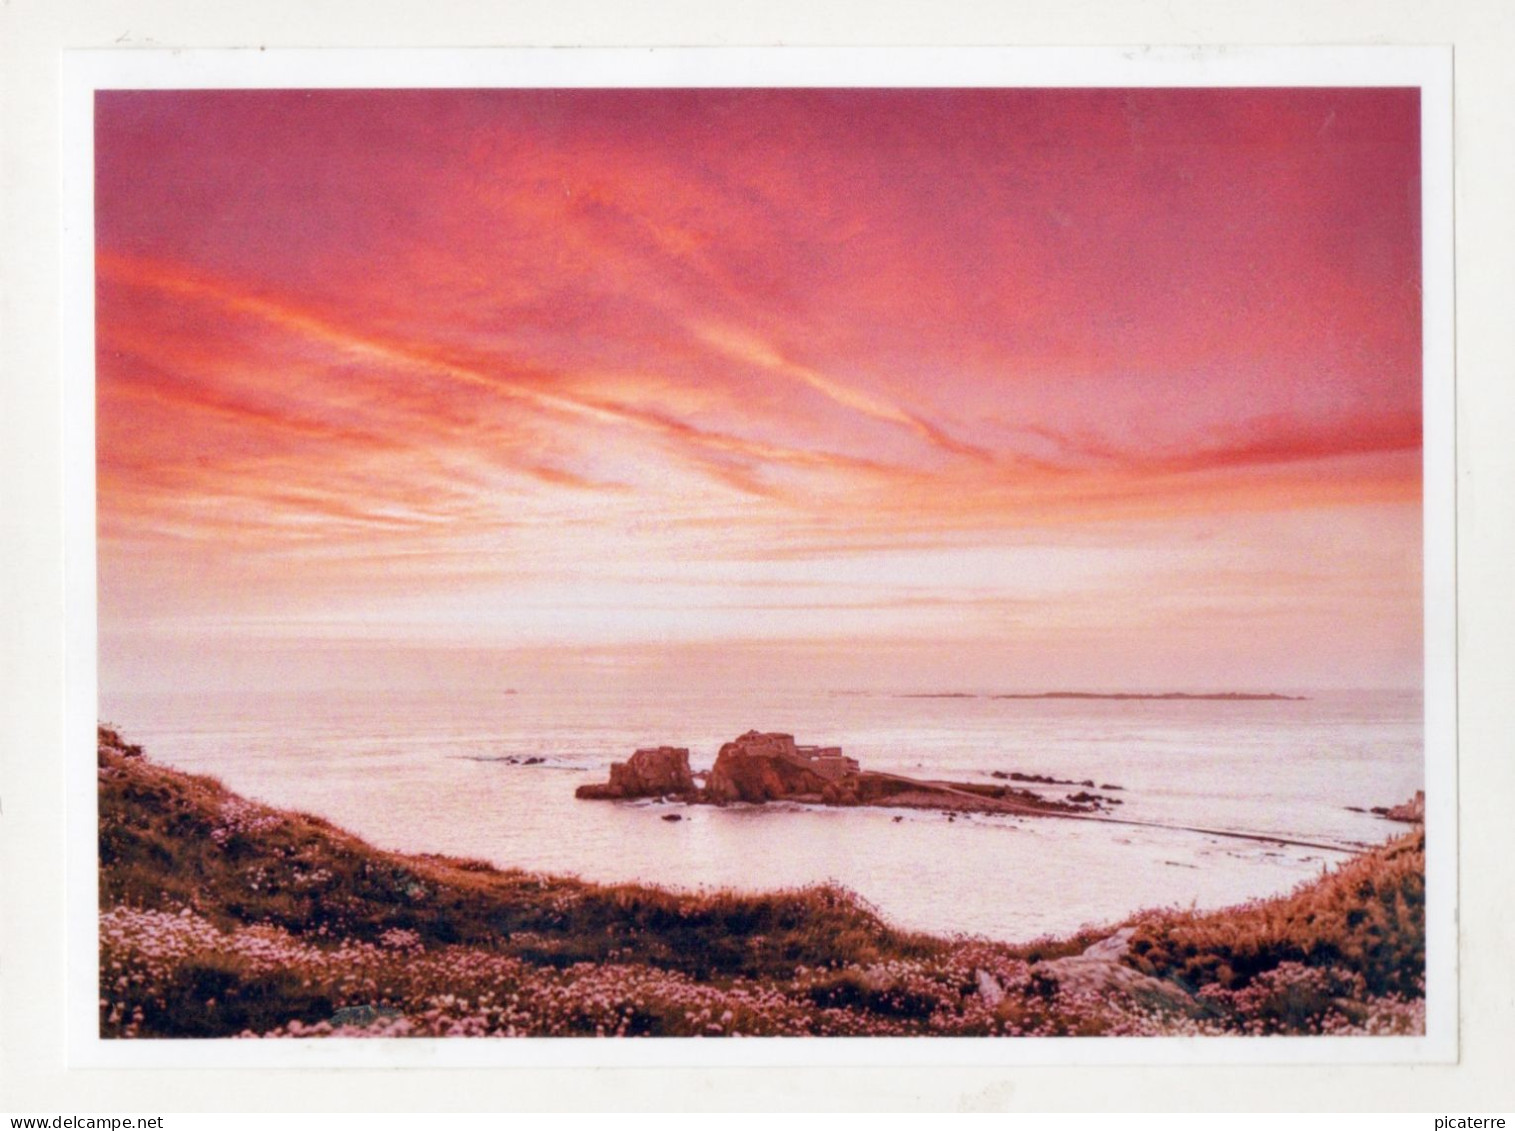 Postcard Size PHOTOGRAPH- Alderney- Red Sky Over Fort Clonque (Burhou Islet Visible Behind)- Ile Aurigny - Alderney